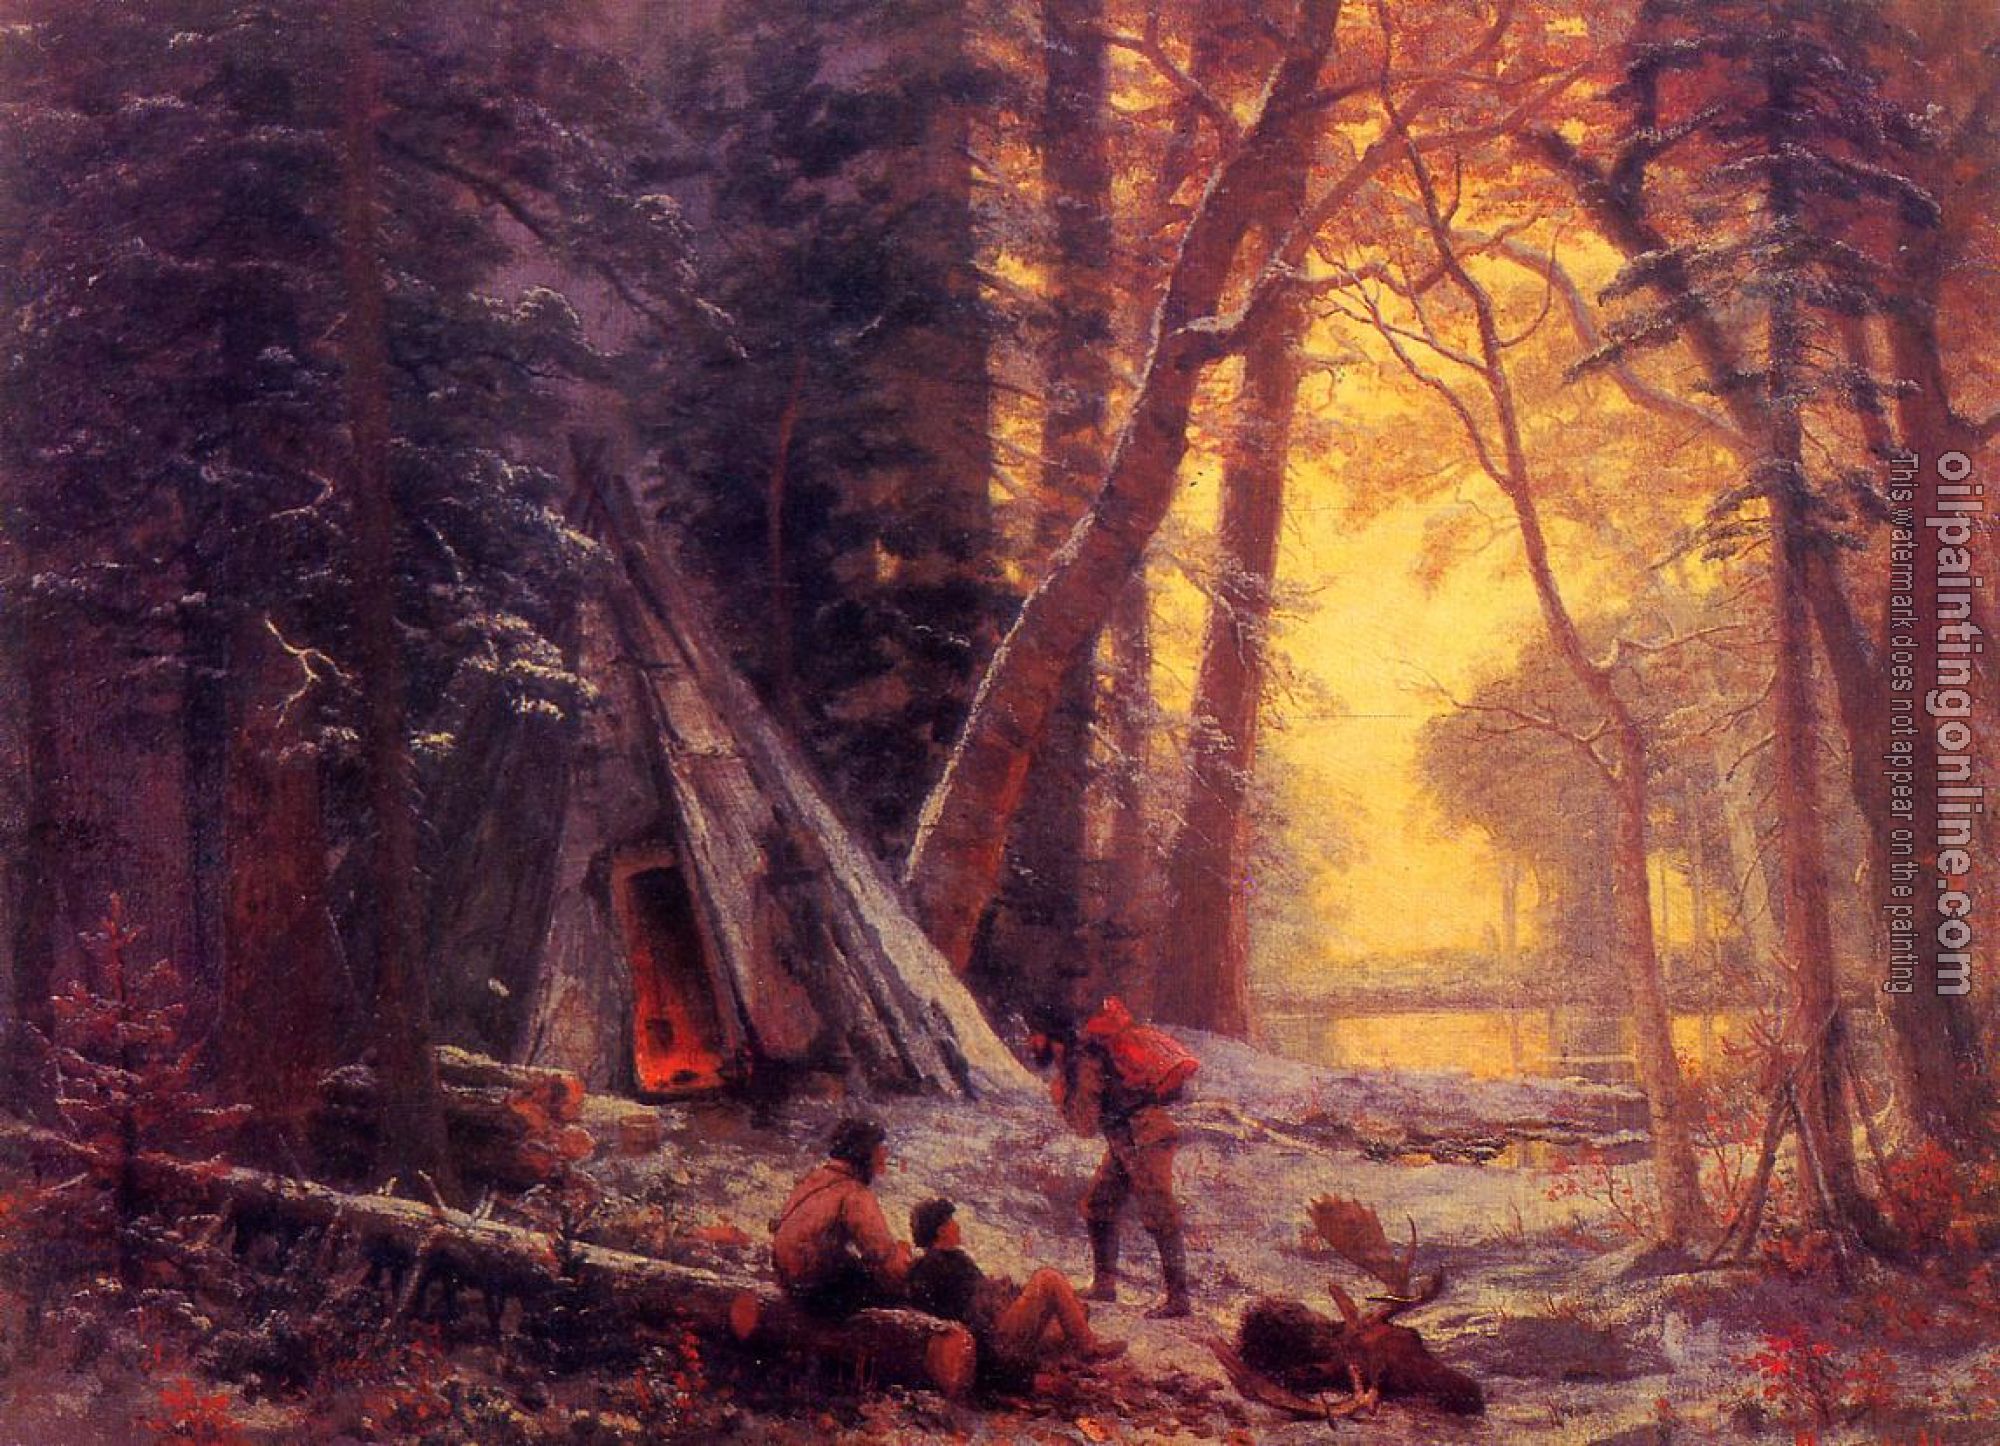 Bierstadt, Albert - Moose Hunters Camp